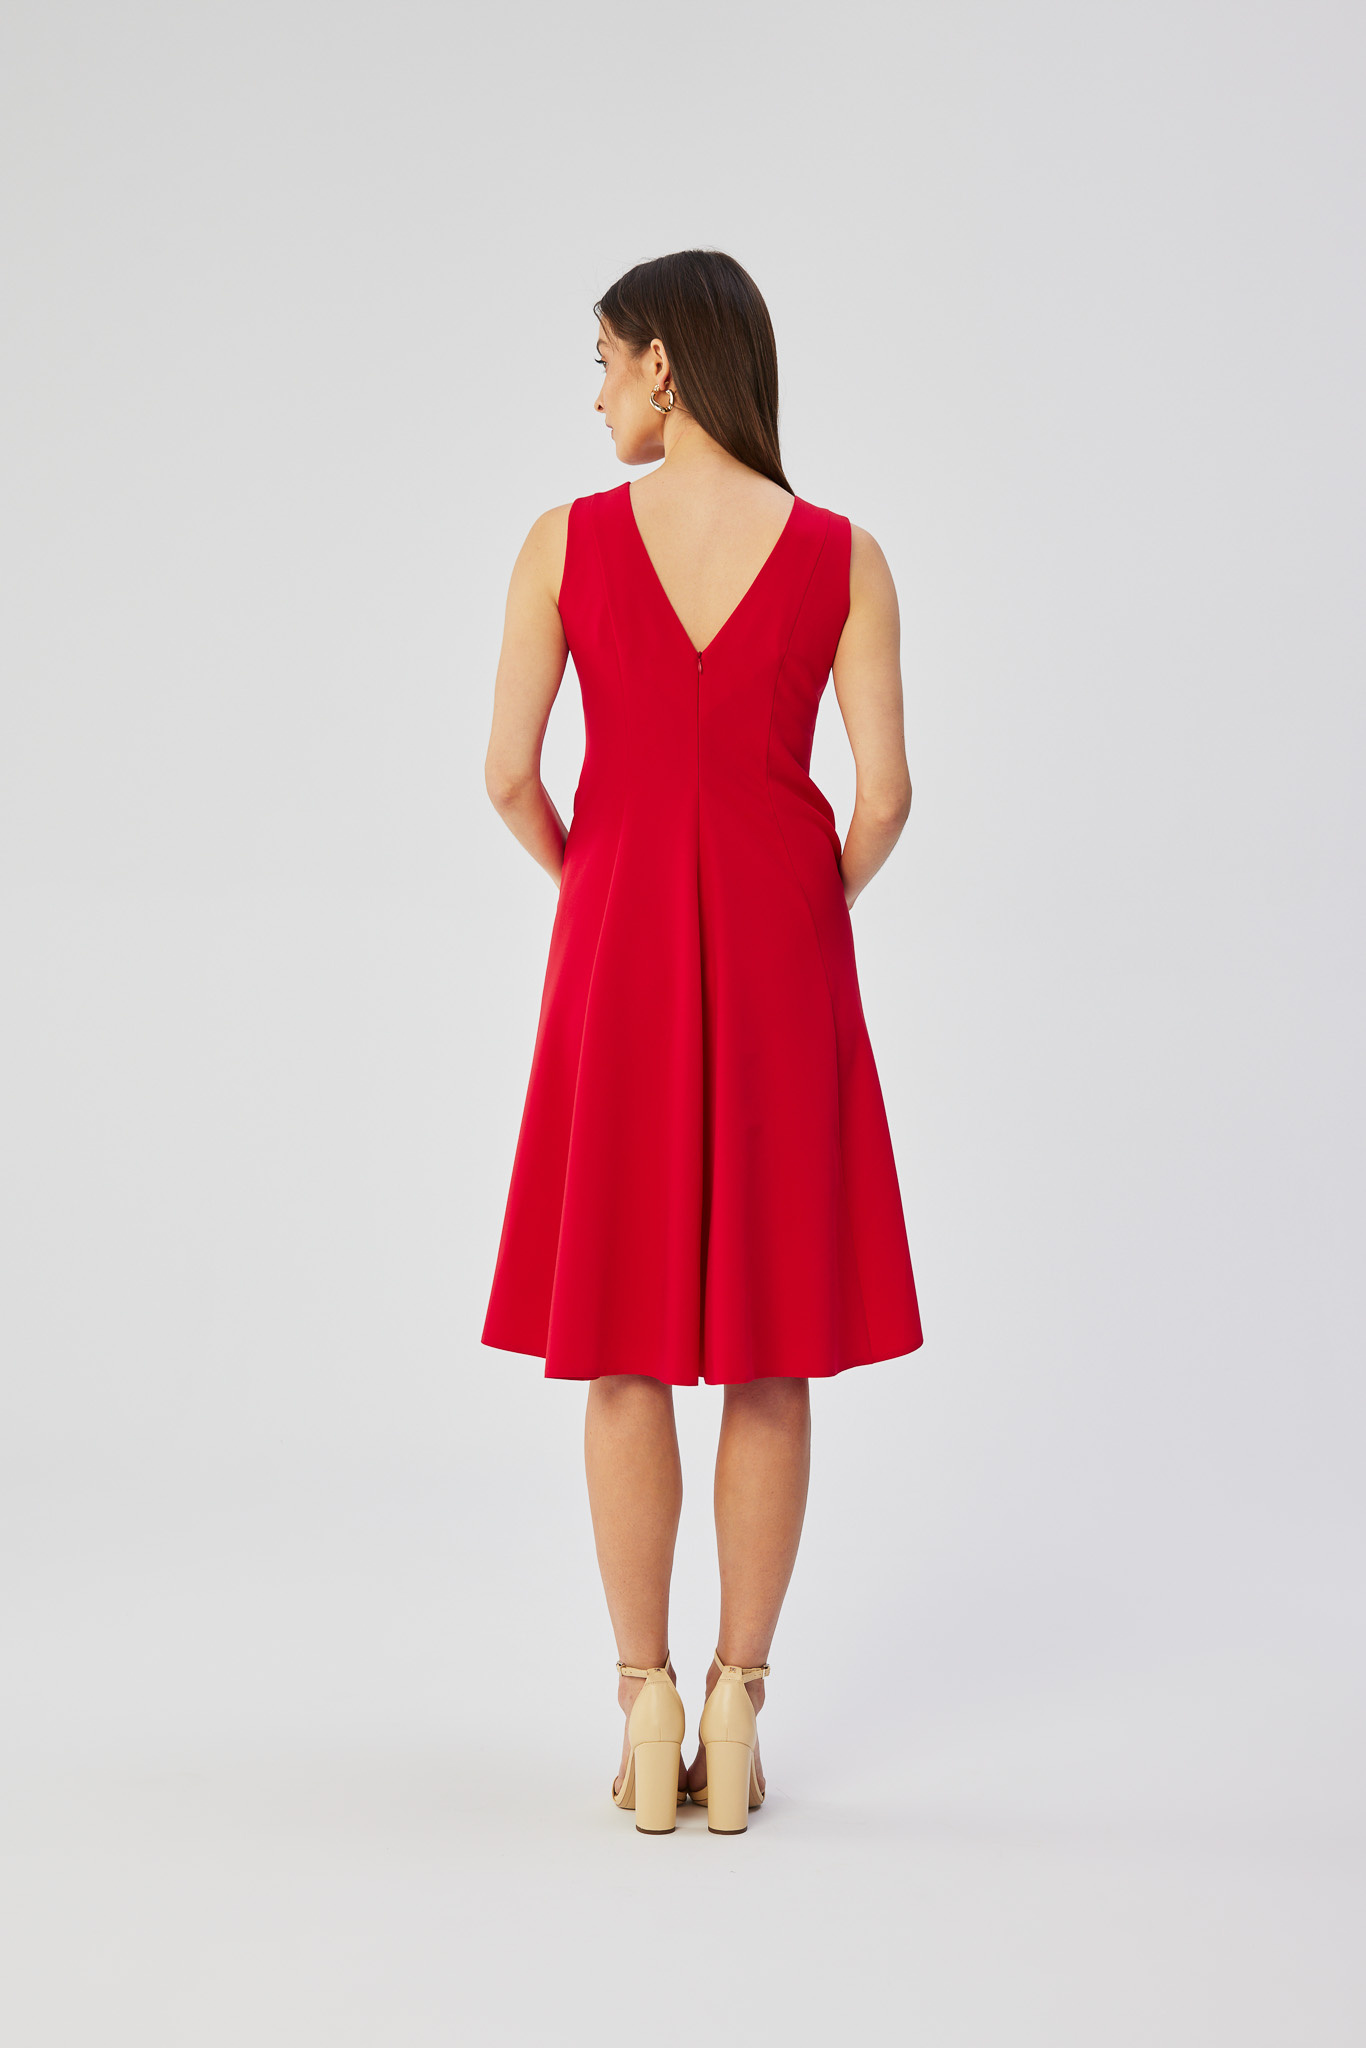 Opis: Elegancka rozkloszowana sukienka koktajlowa czerwona.